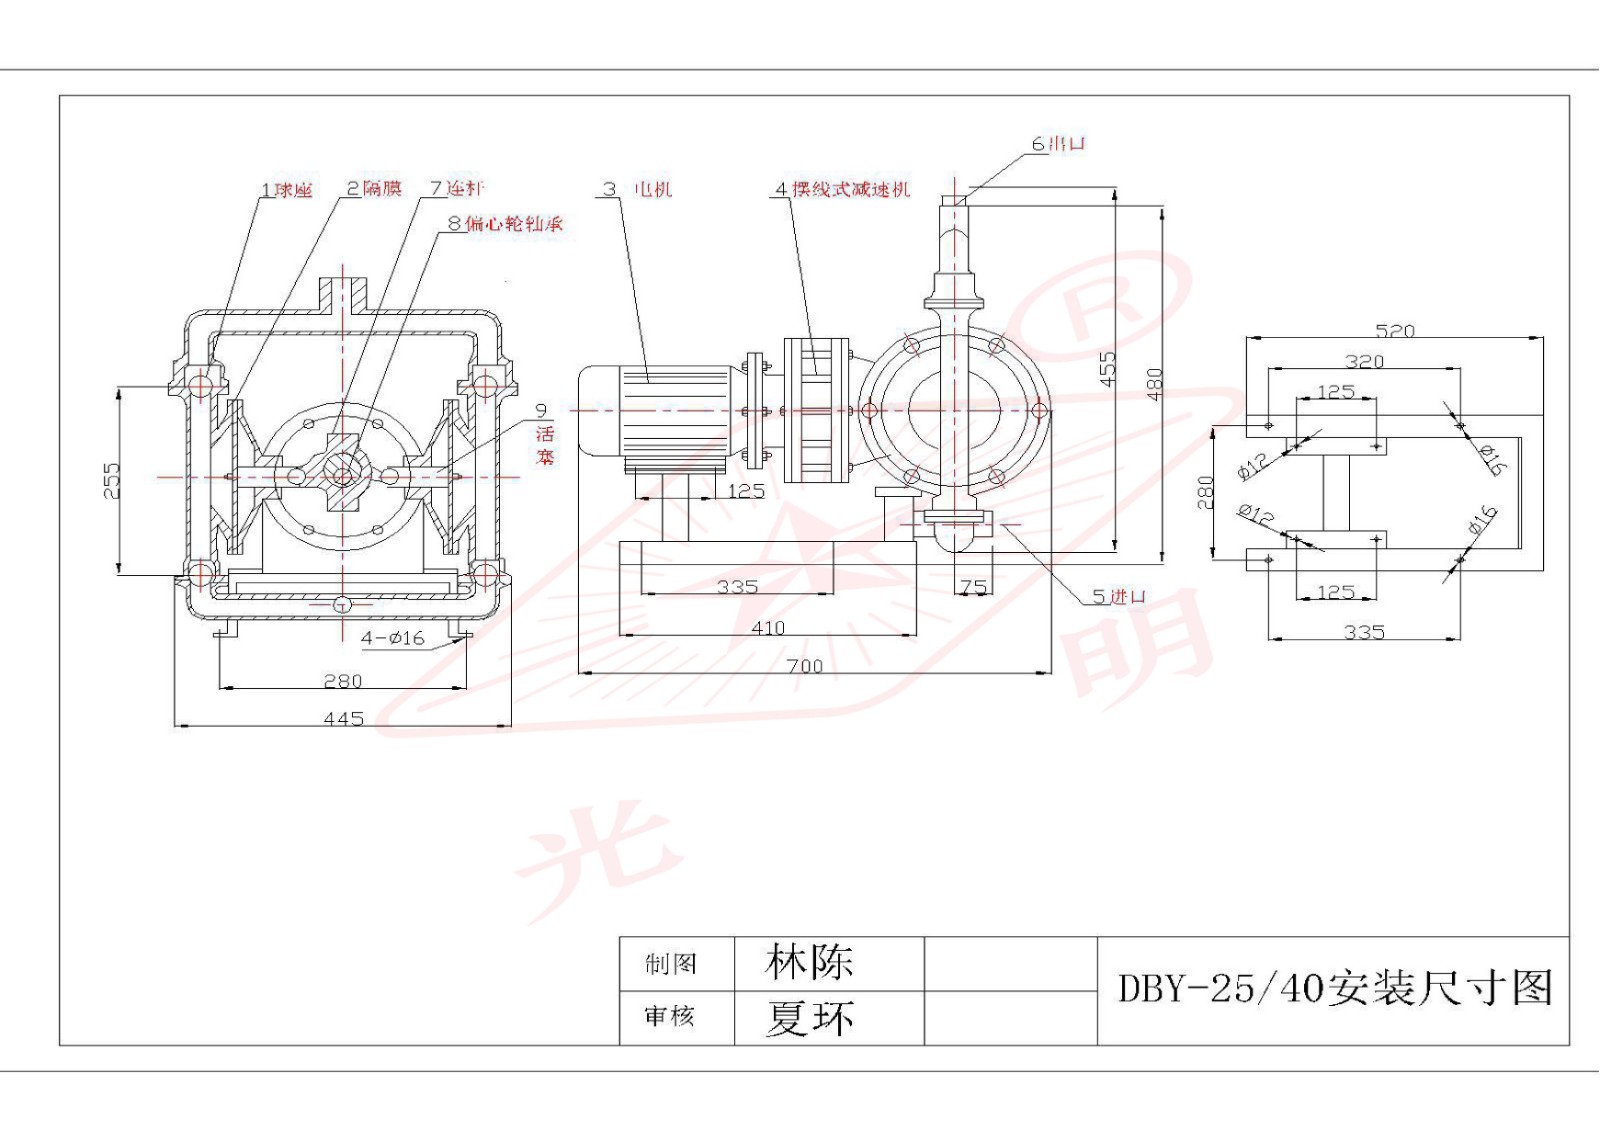 DBY-25/10电动隔膜泵安装尺寸图